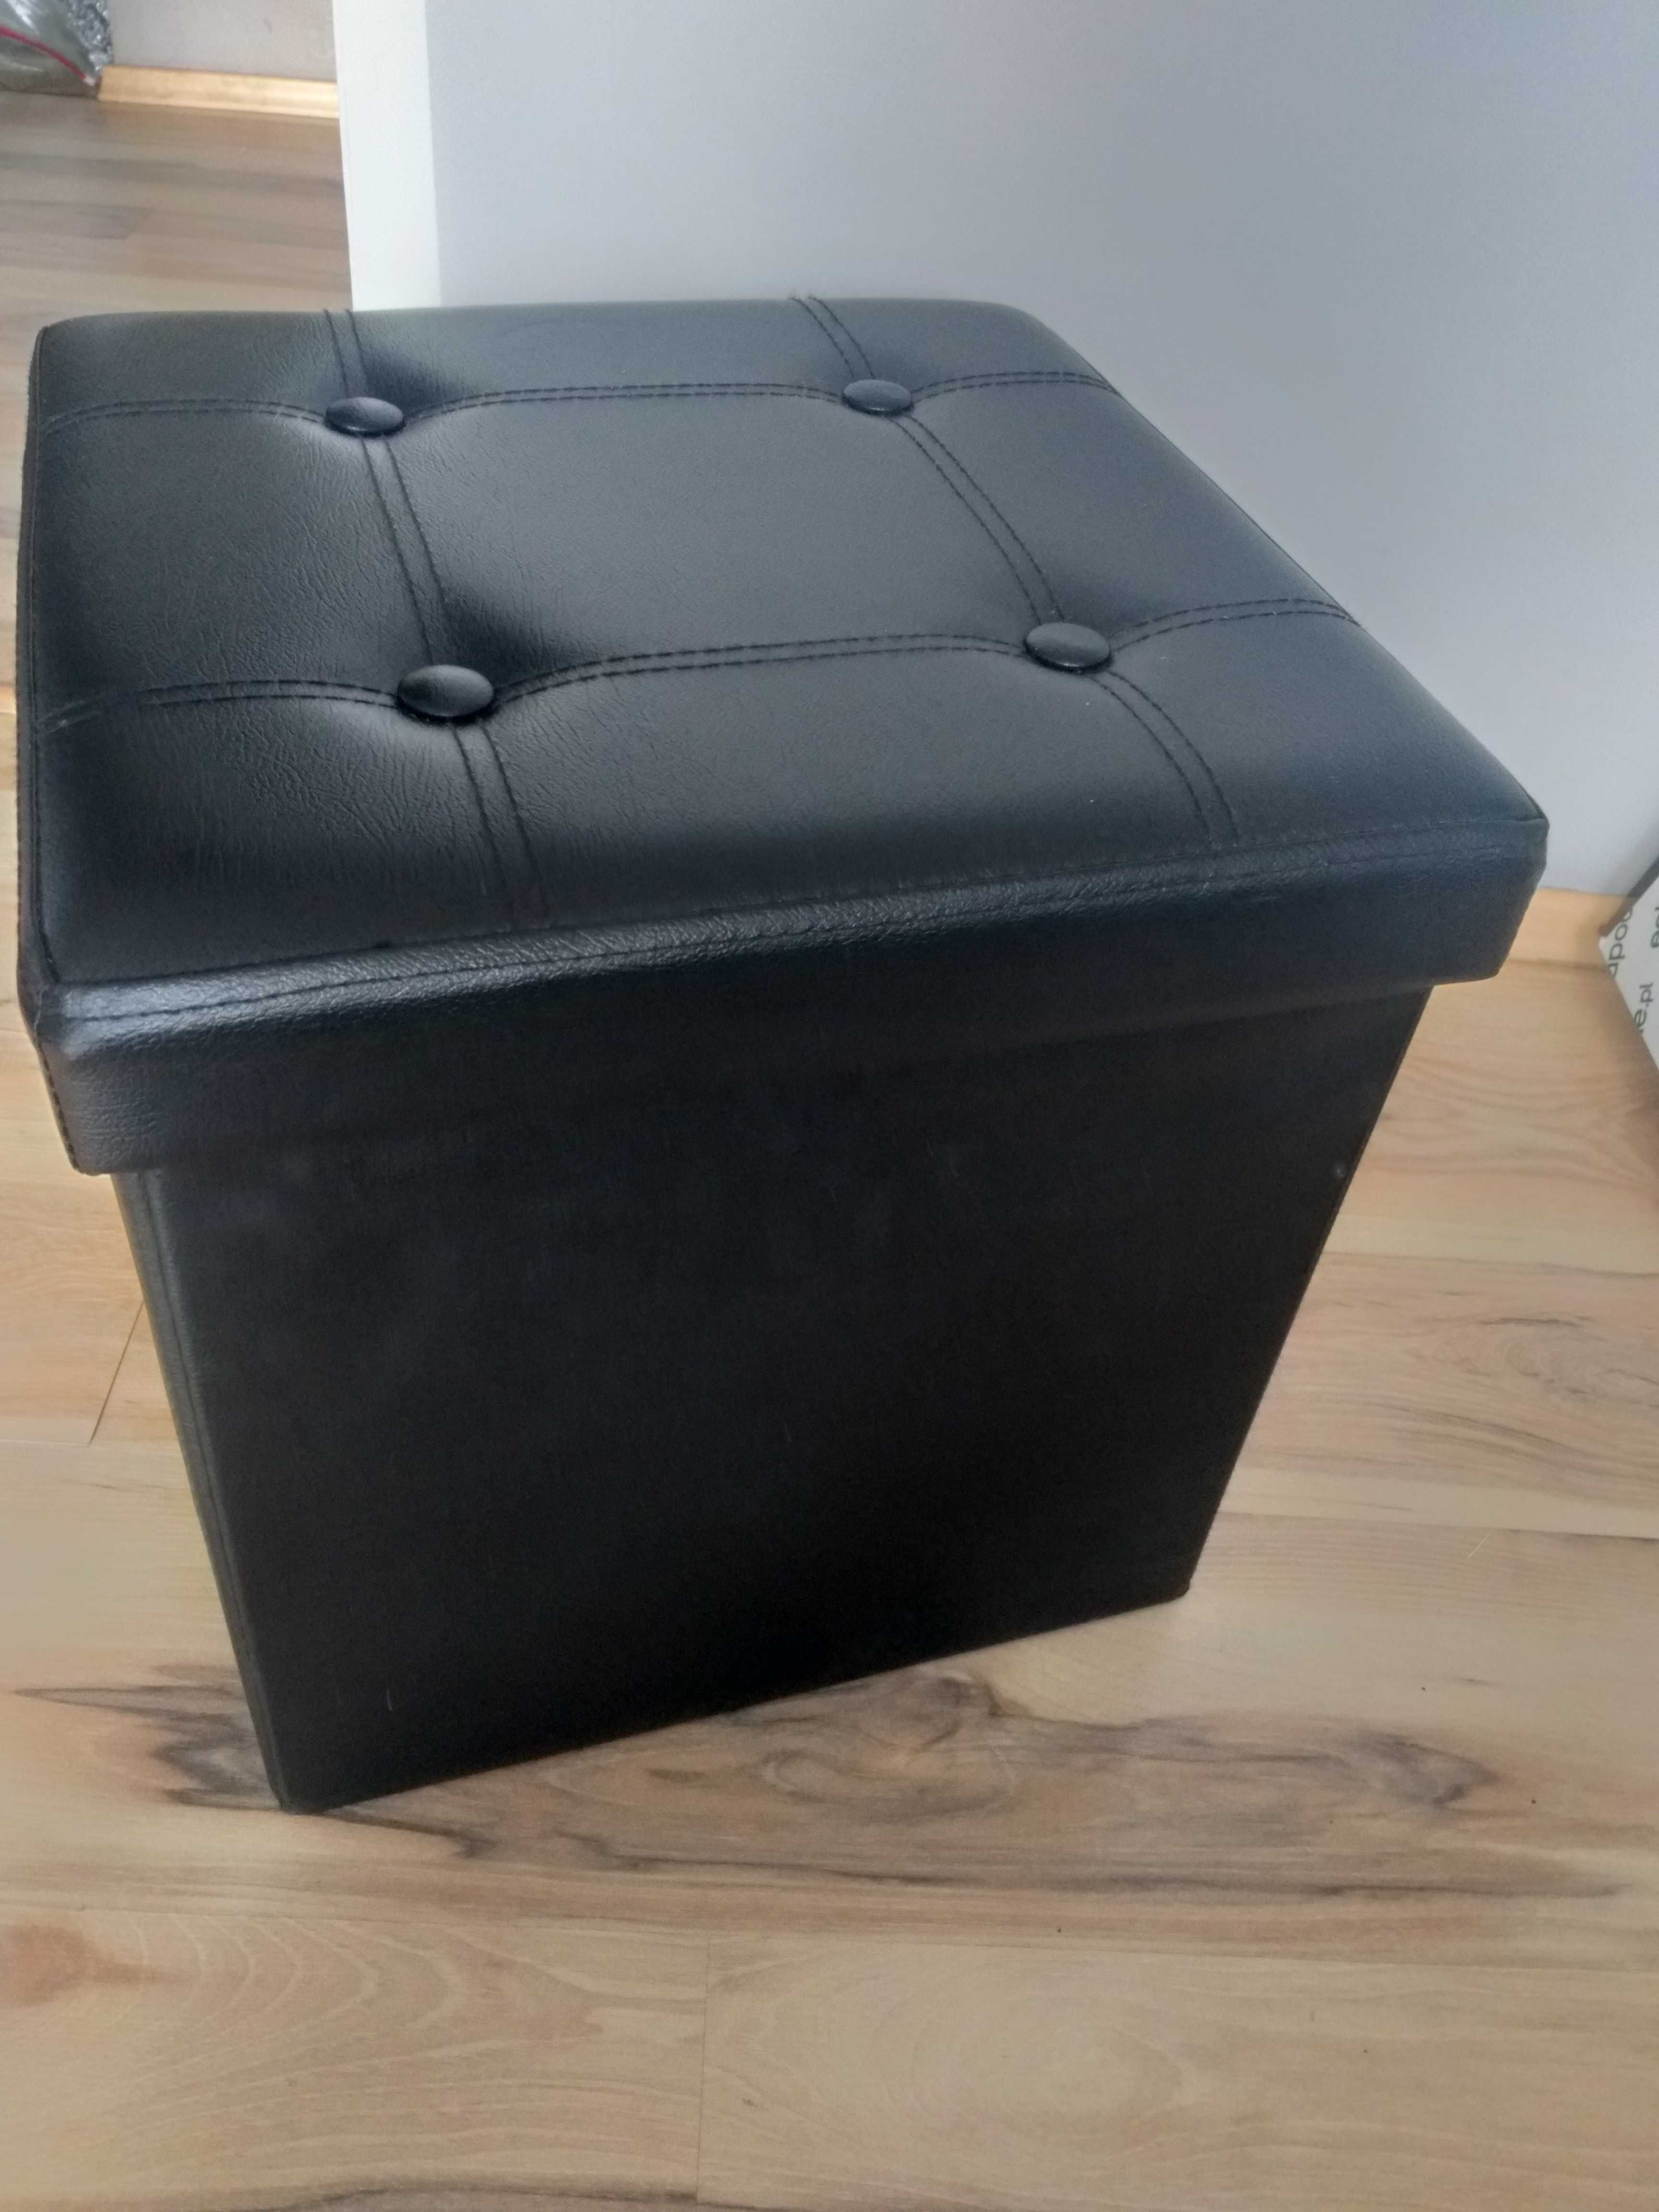 Czarna składana pufa do siedzenia i przechowywania